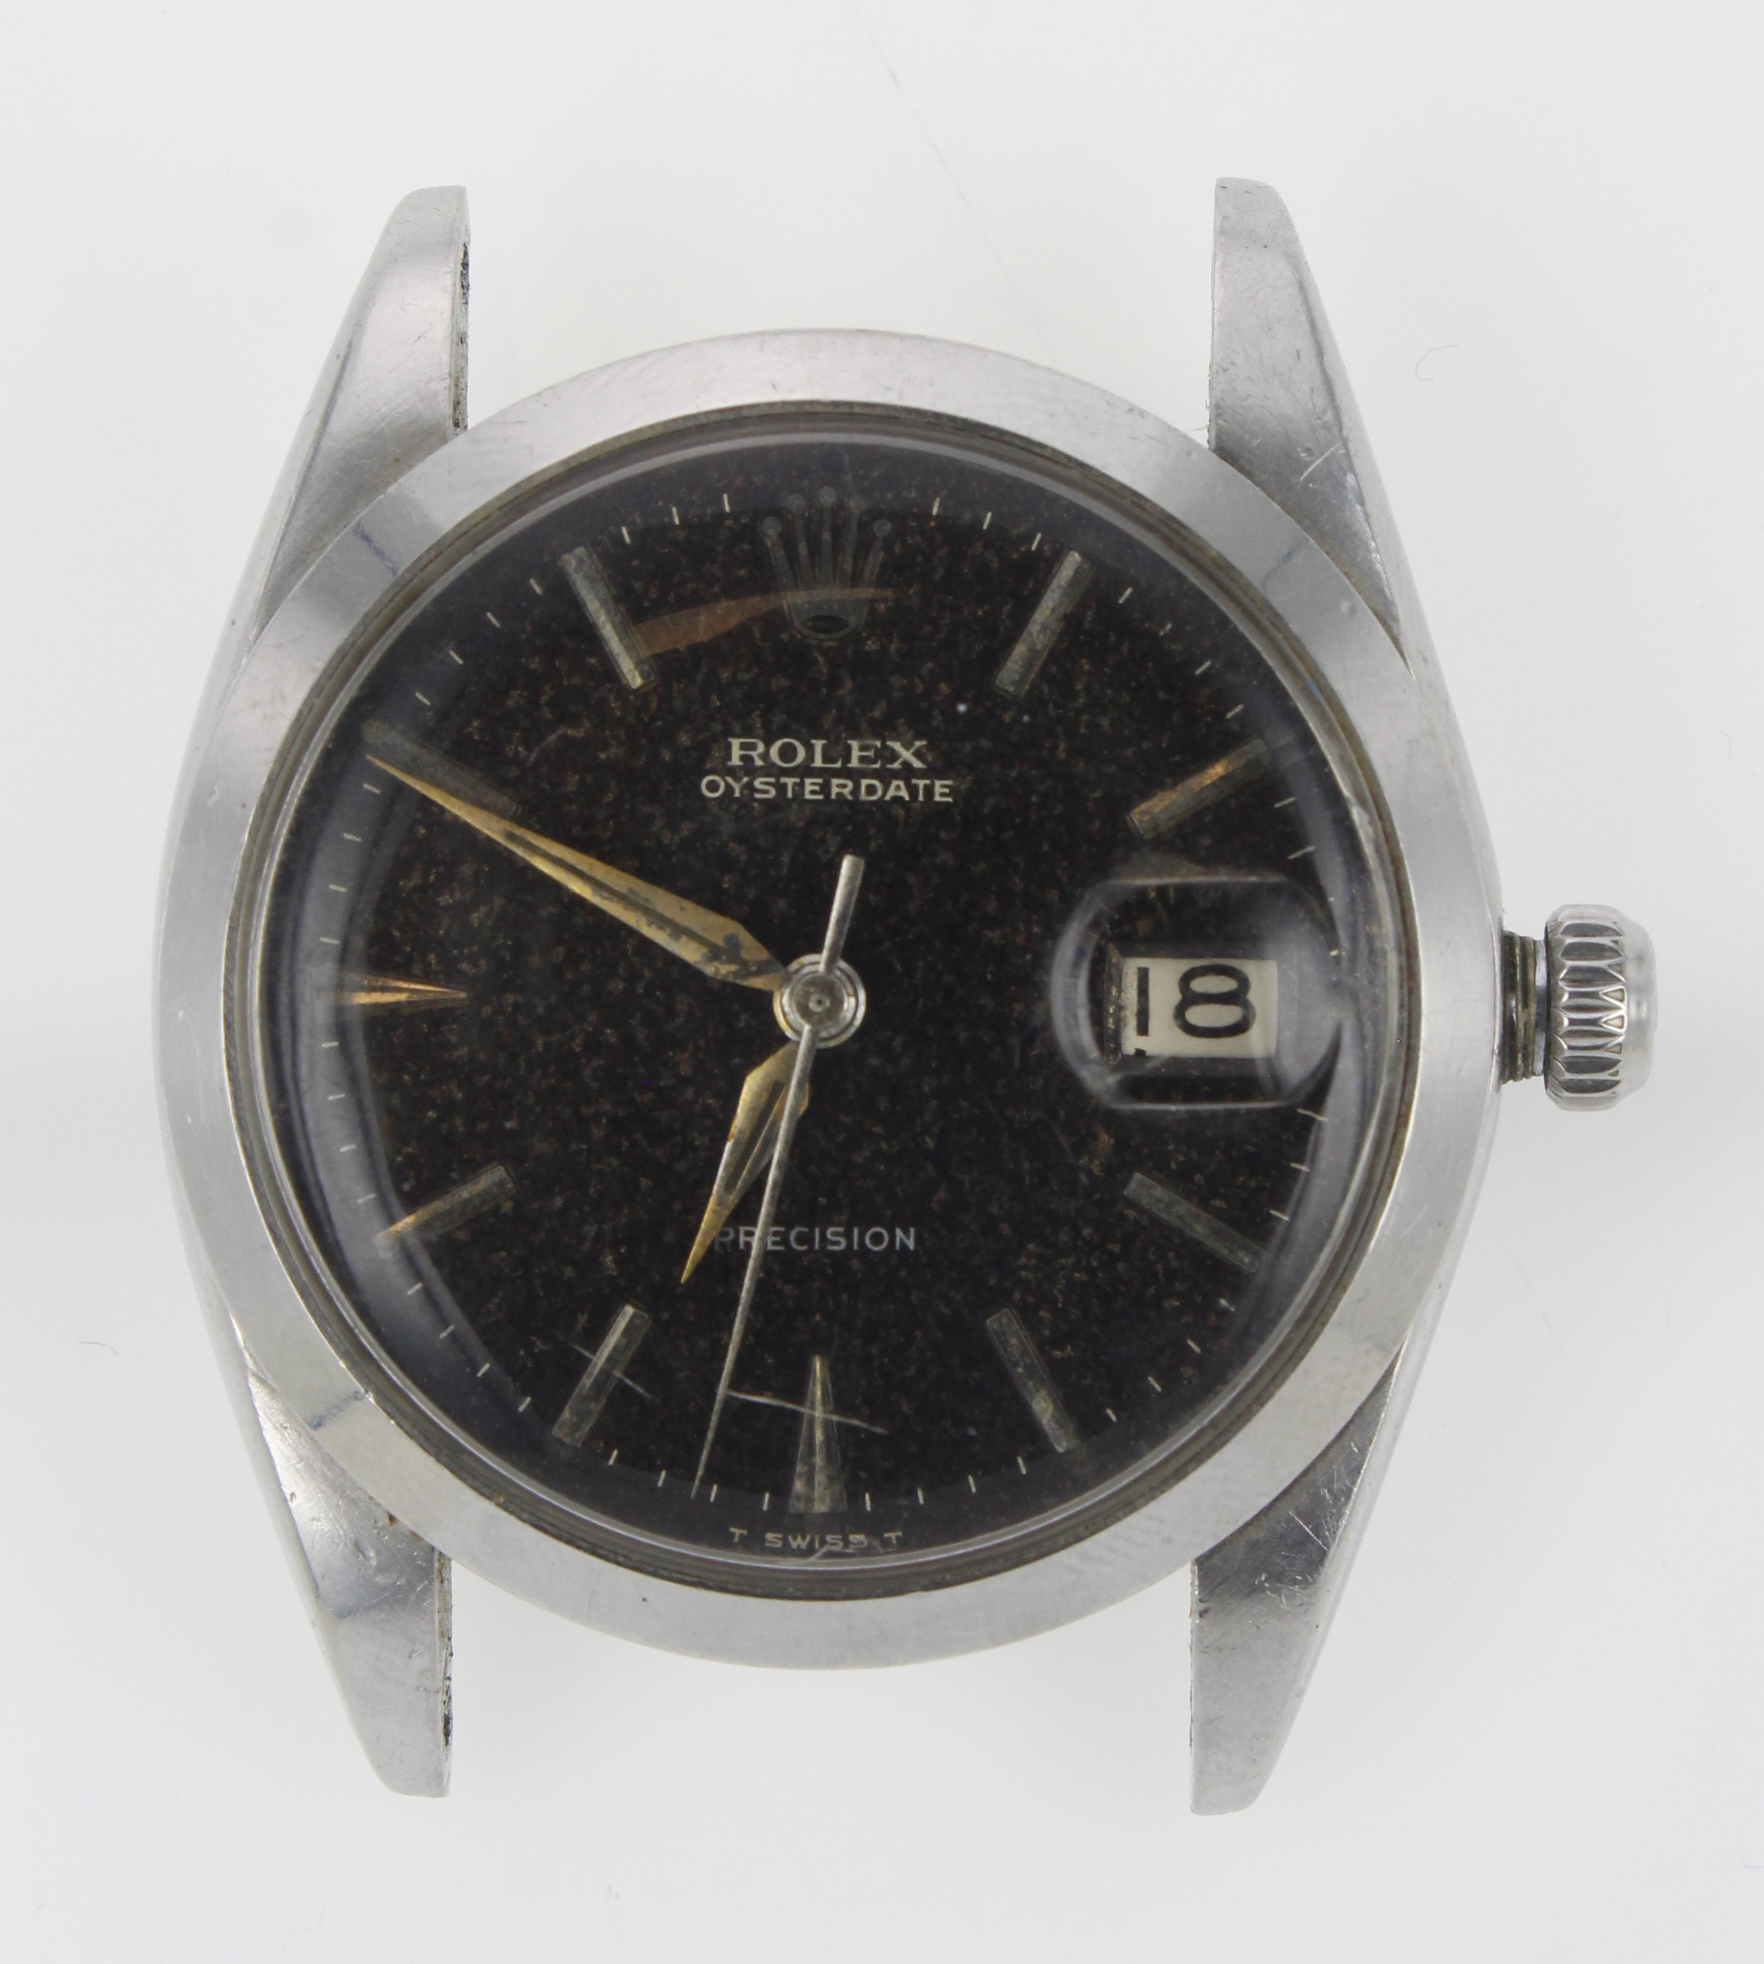 Rolex Oysterdate Precision stainless steel cased gents wristwatch, ref. 6694, serial. 1194xxx, circa